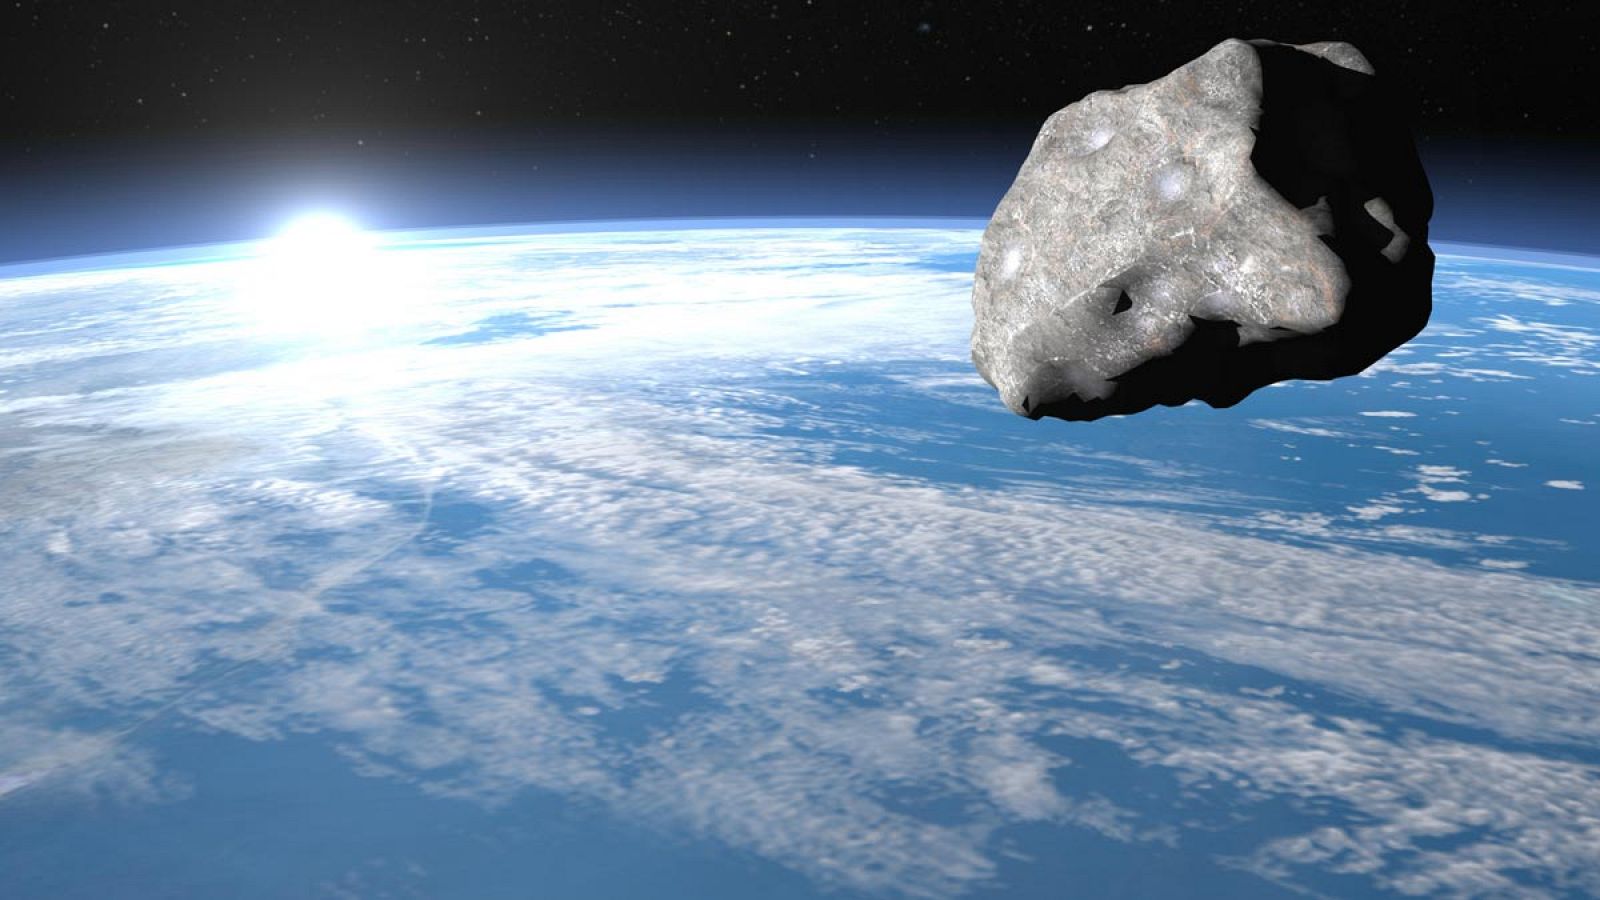 La fecha elegida recuerda el "evento Tunguska", cuando un asteroide impactó violentamente en Siberia el 30 de junio de 1908.